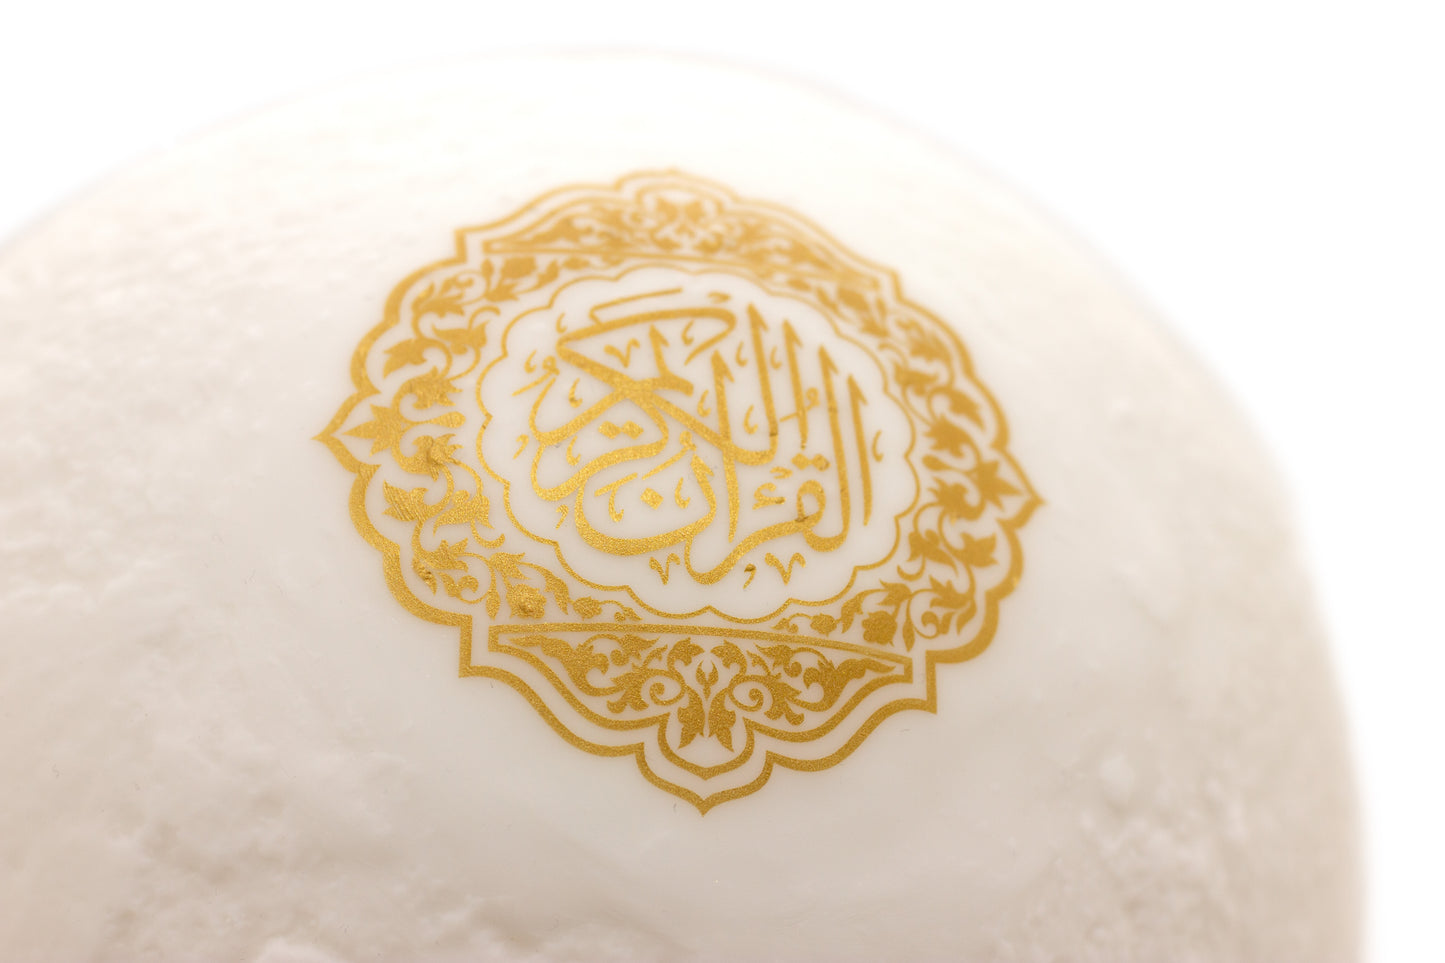 Quran Moon Lamp - Original - App Version